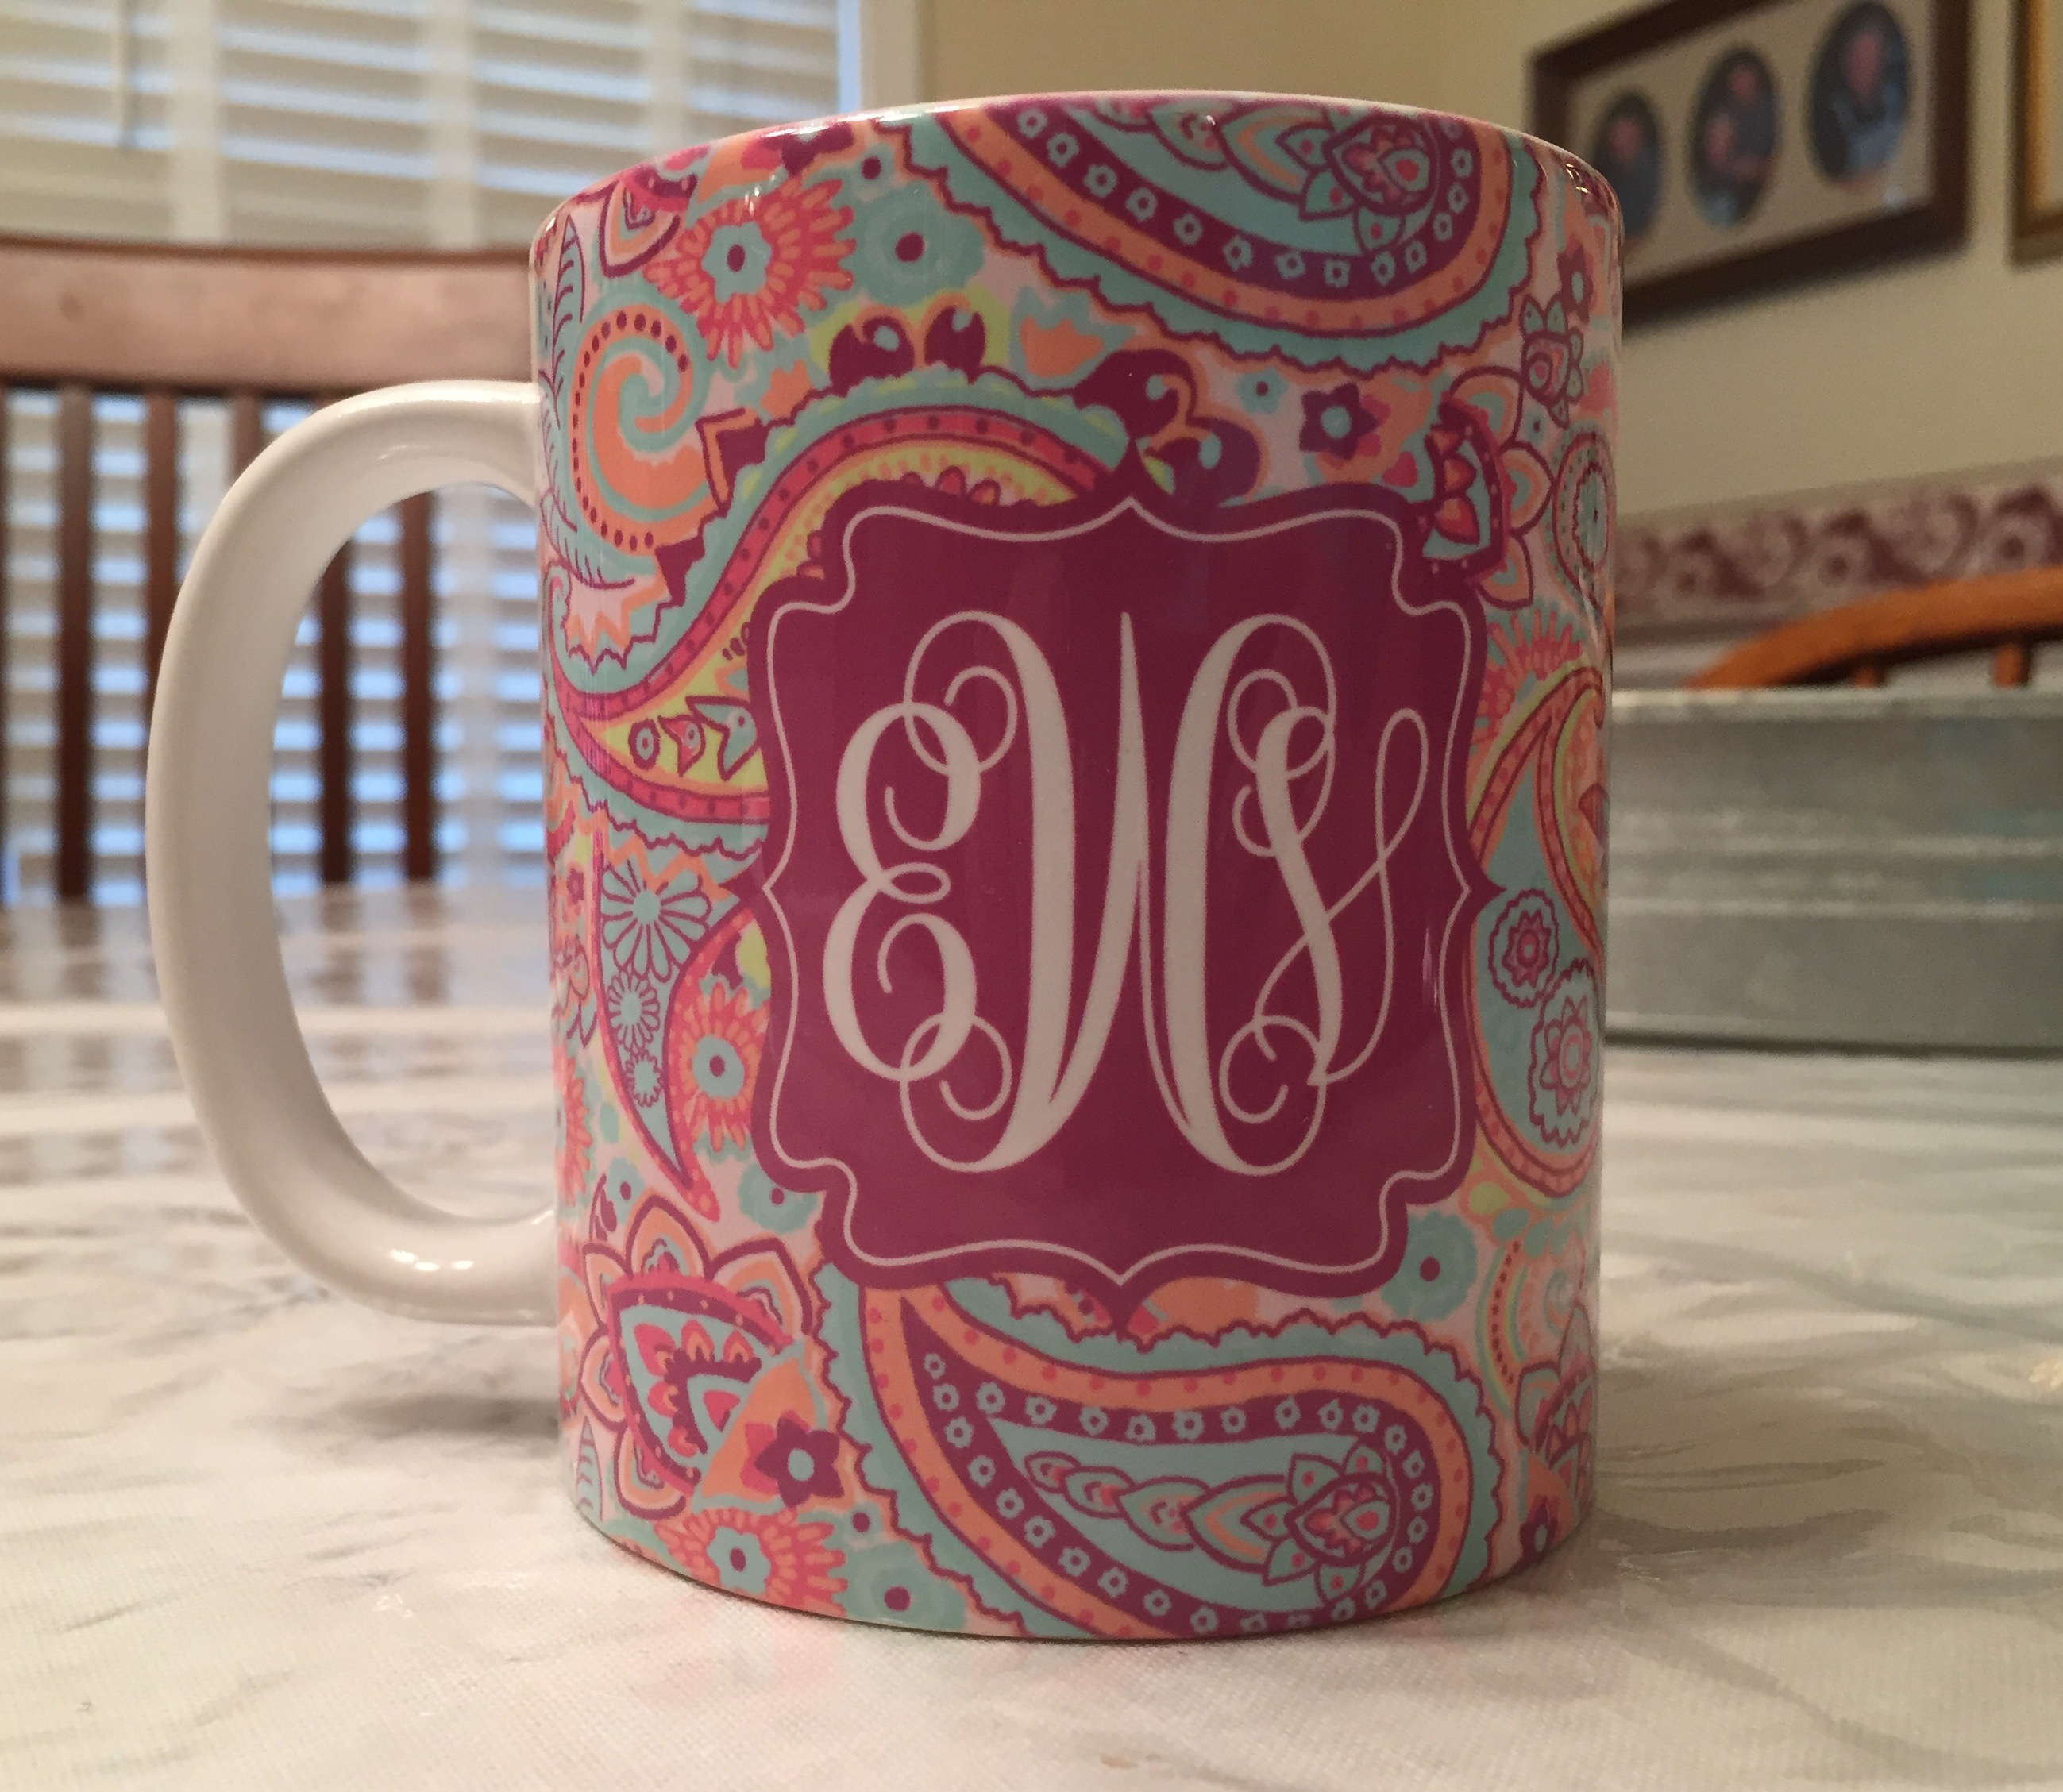 Paisley mug made with sublimation printing